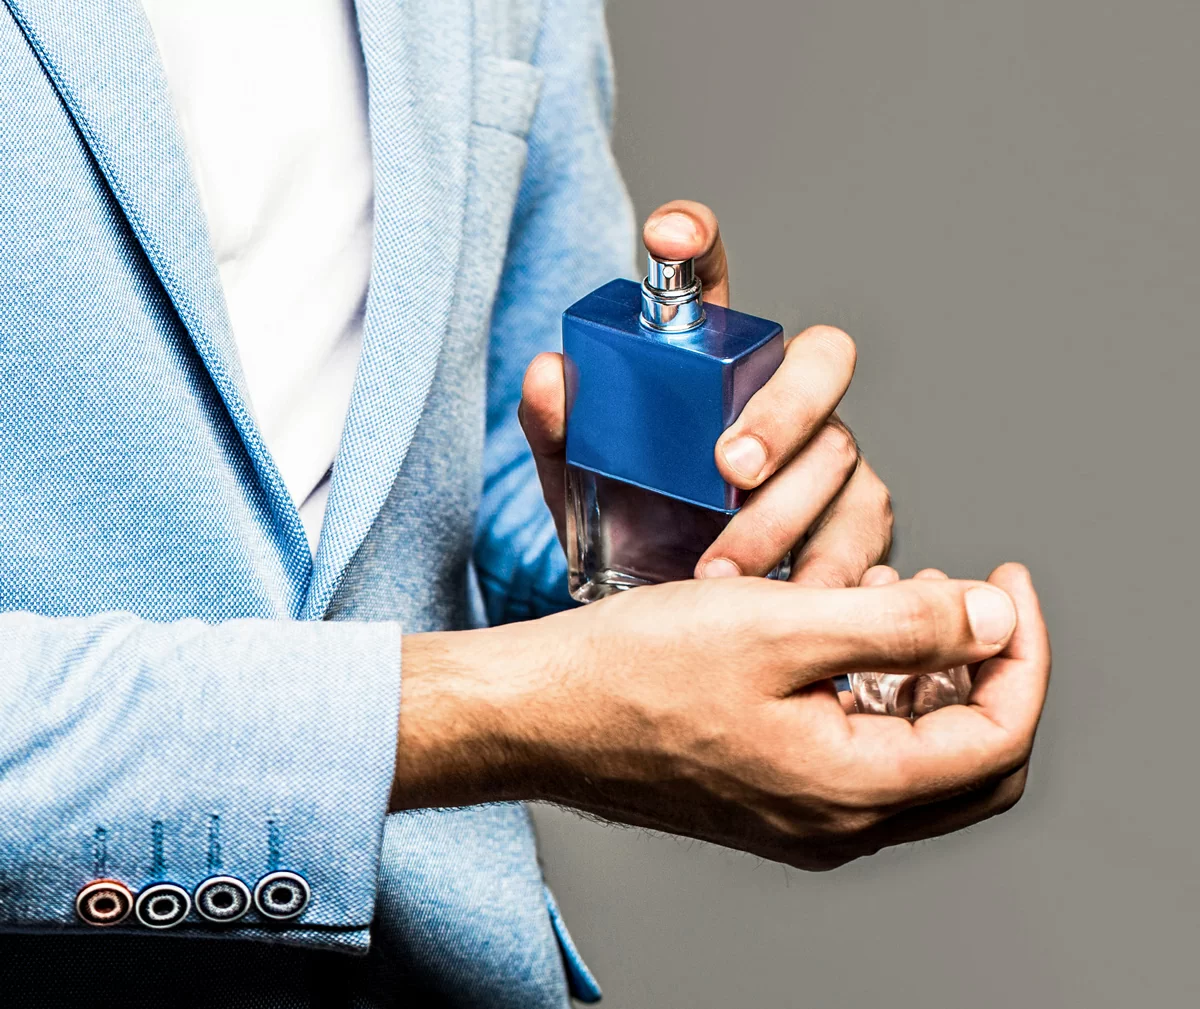 perfume-cologne-bottle-male-fragrance-perfumery-cosmetics-man-perfume-fragrance-masculine-perfume-man-holding-up-bottle-perfume.jpg